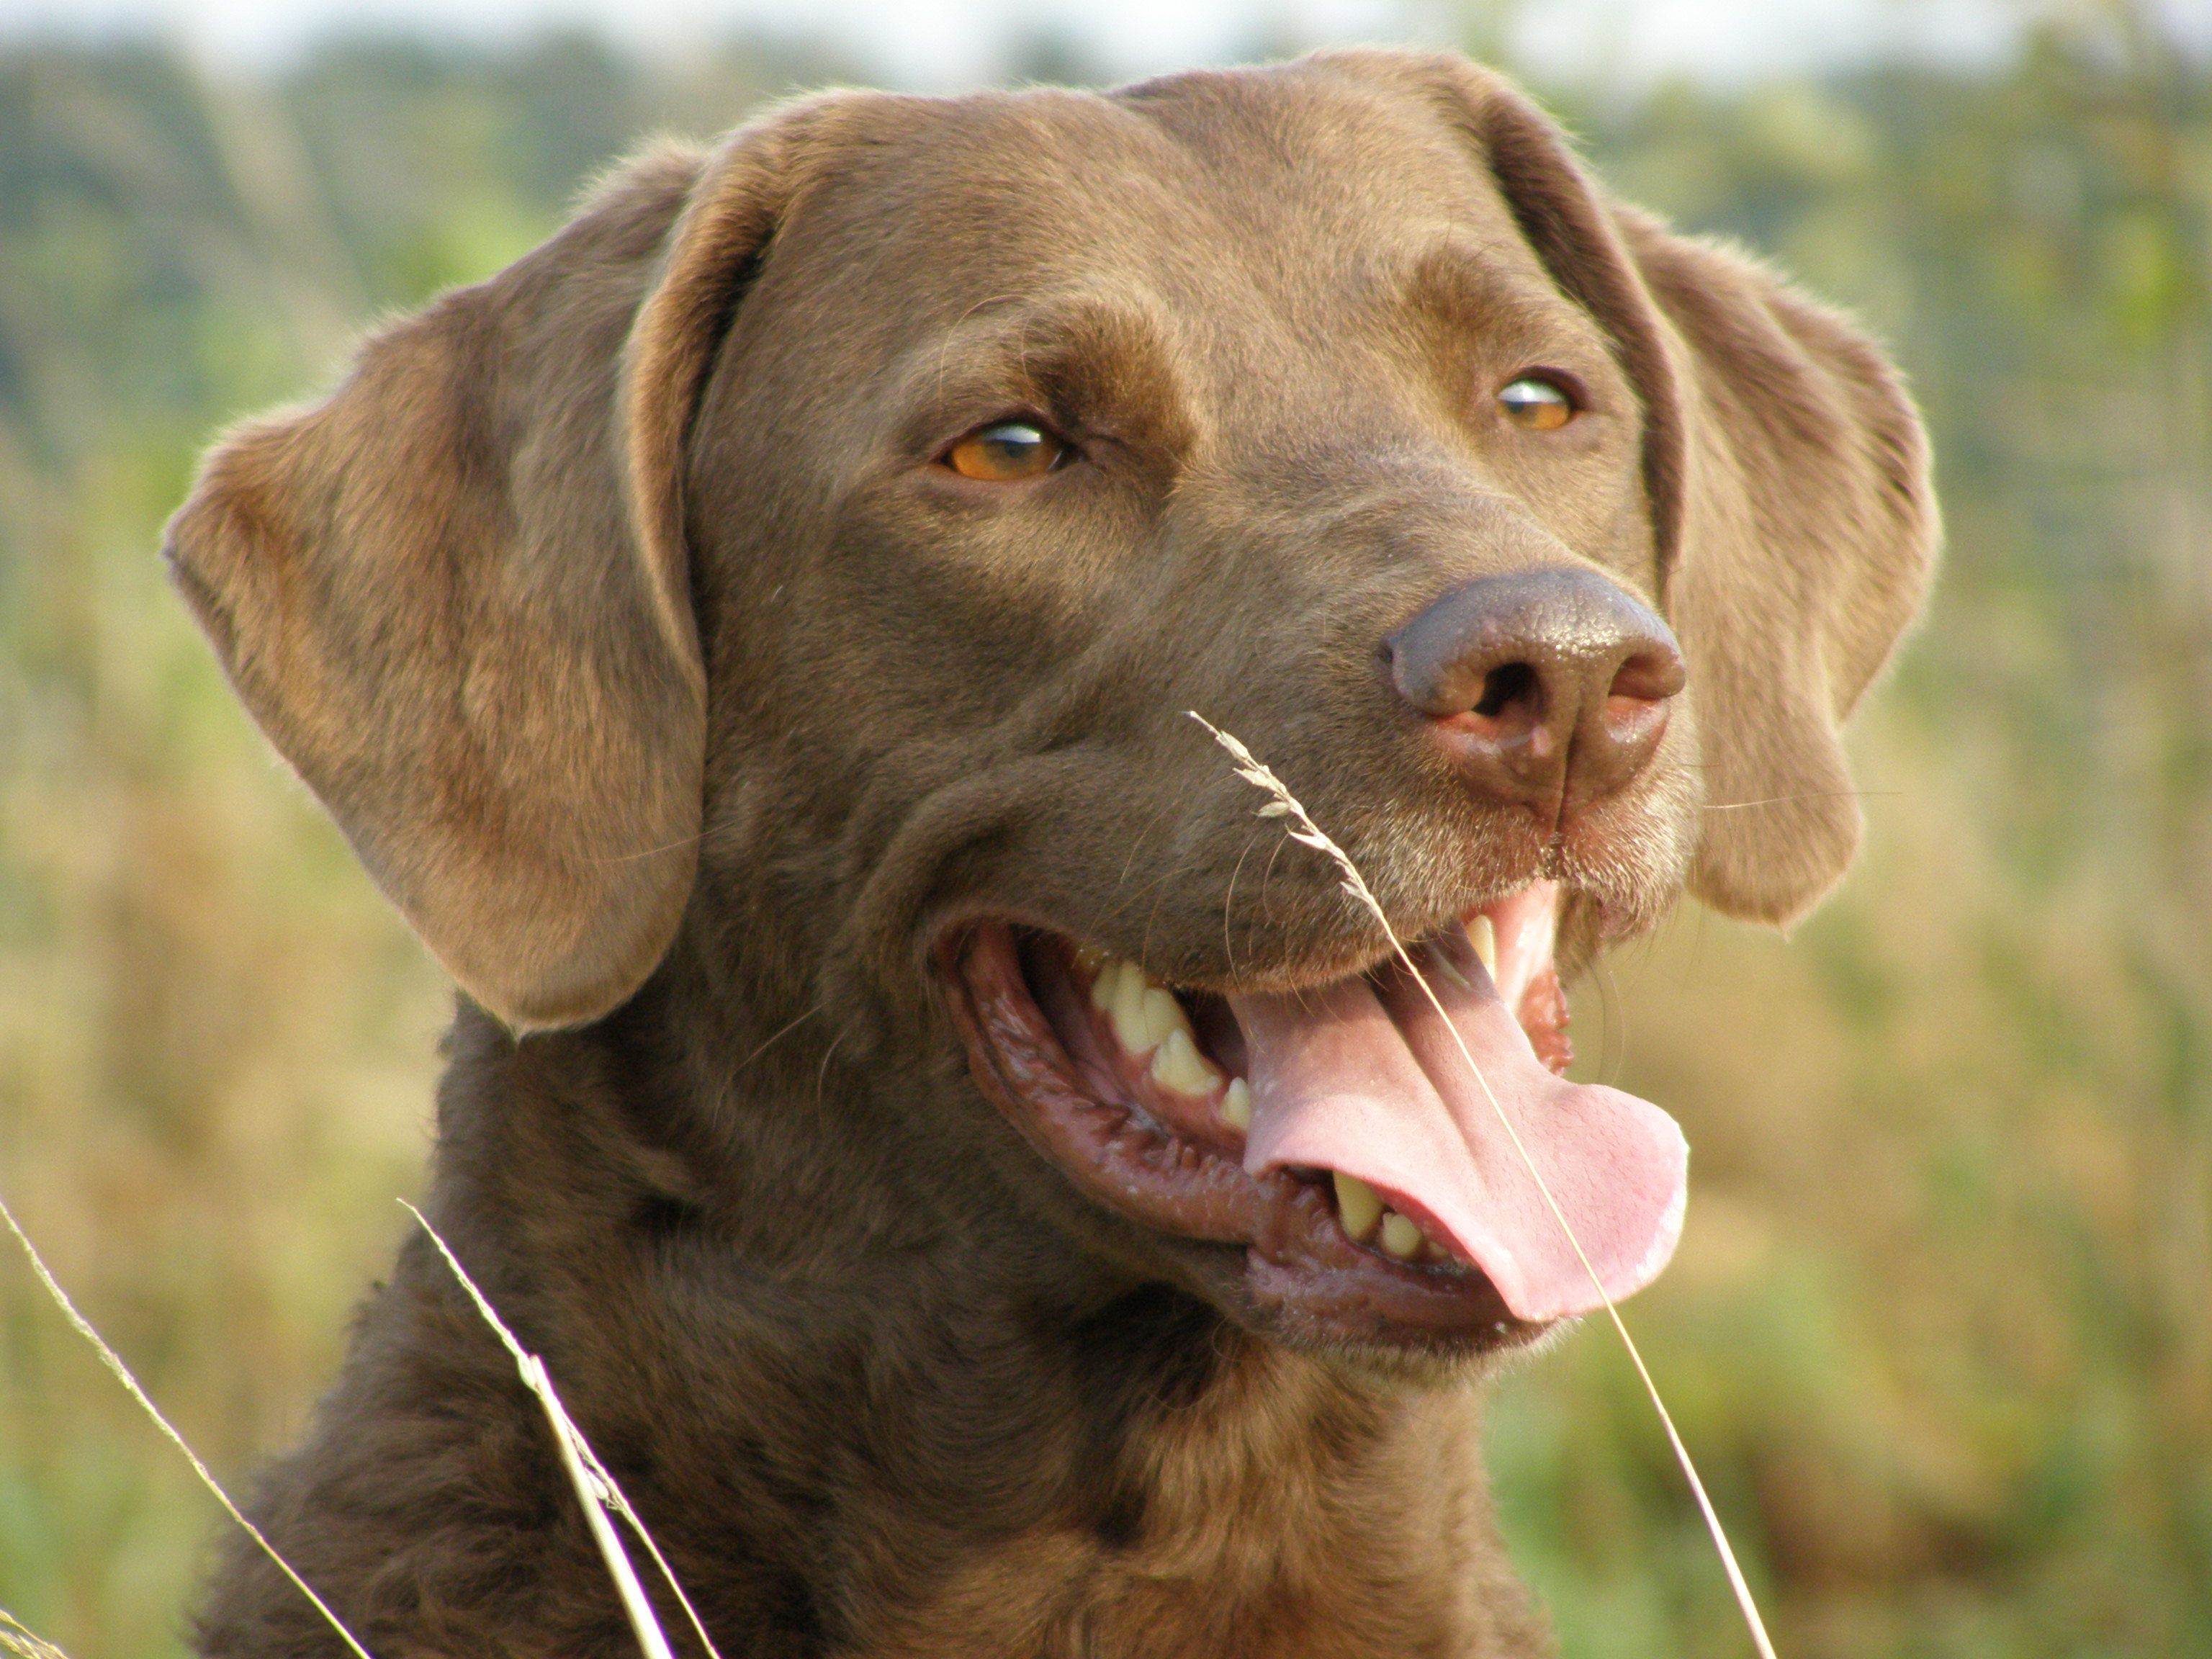 Чесапик бей ретривер: описание и характеристика породы собак